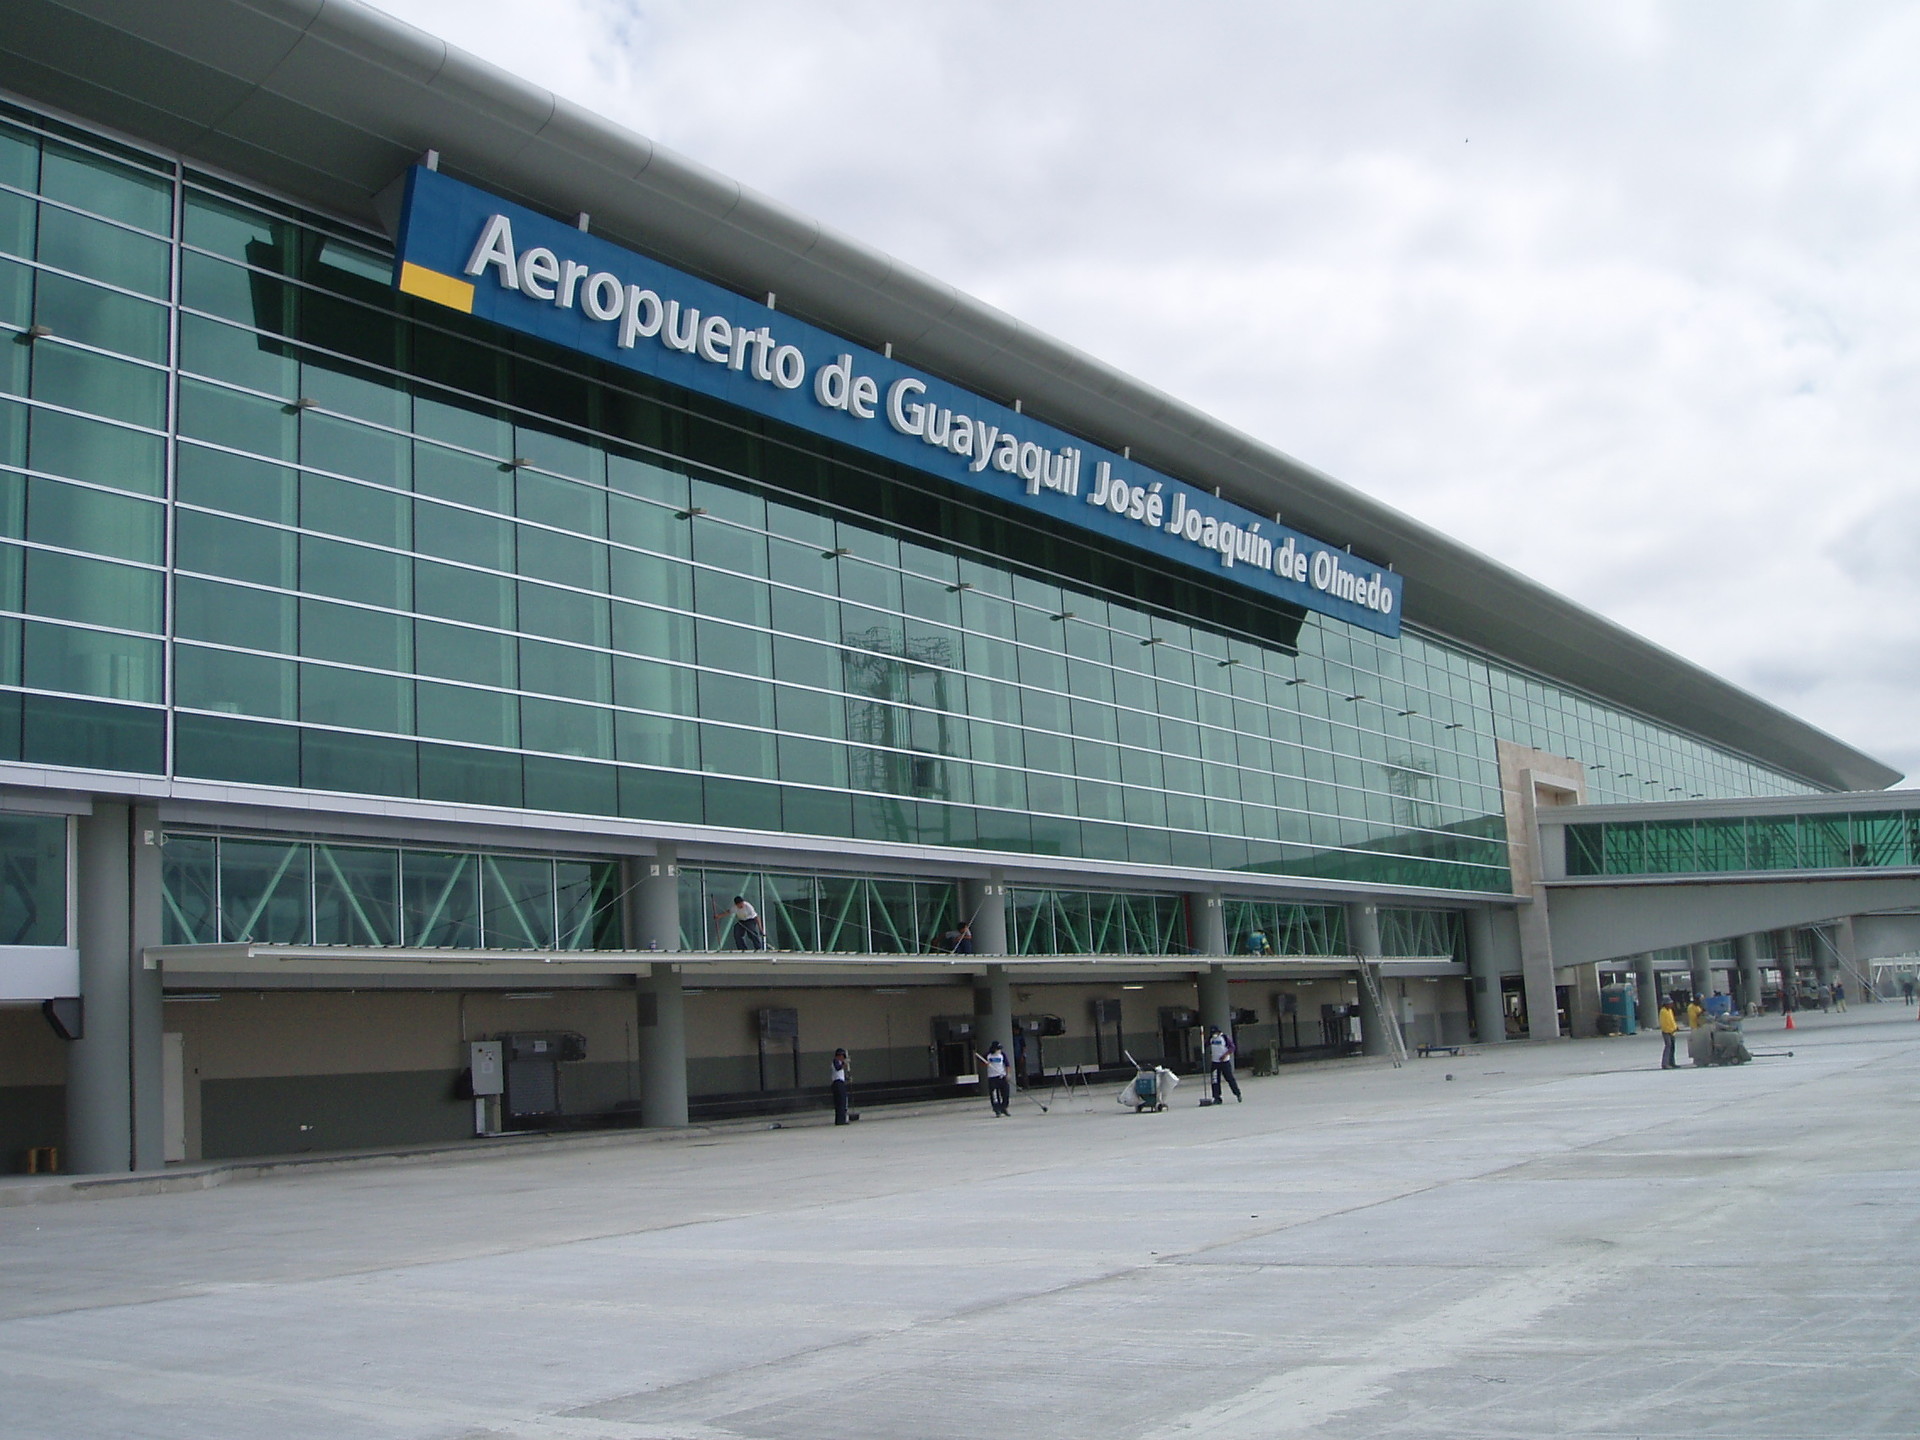 Logistica de vuelo Guayaquil y Experiencia Erasmus Quito